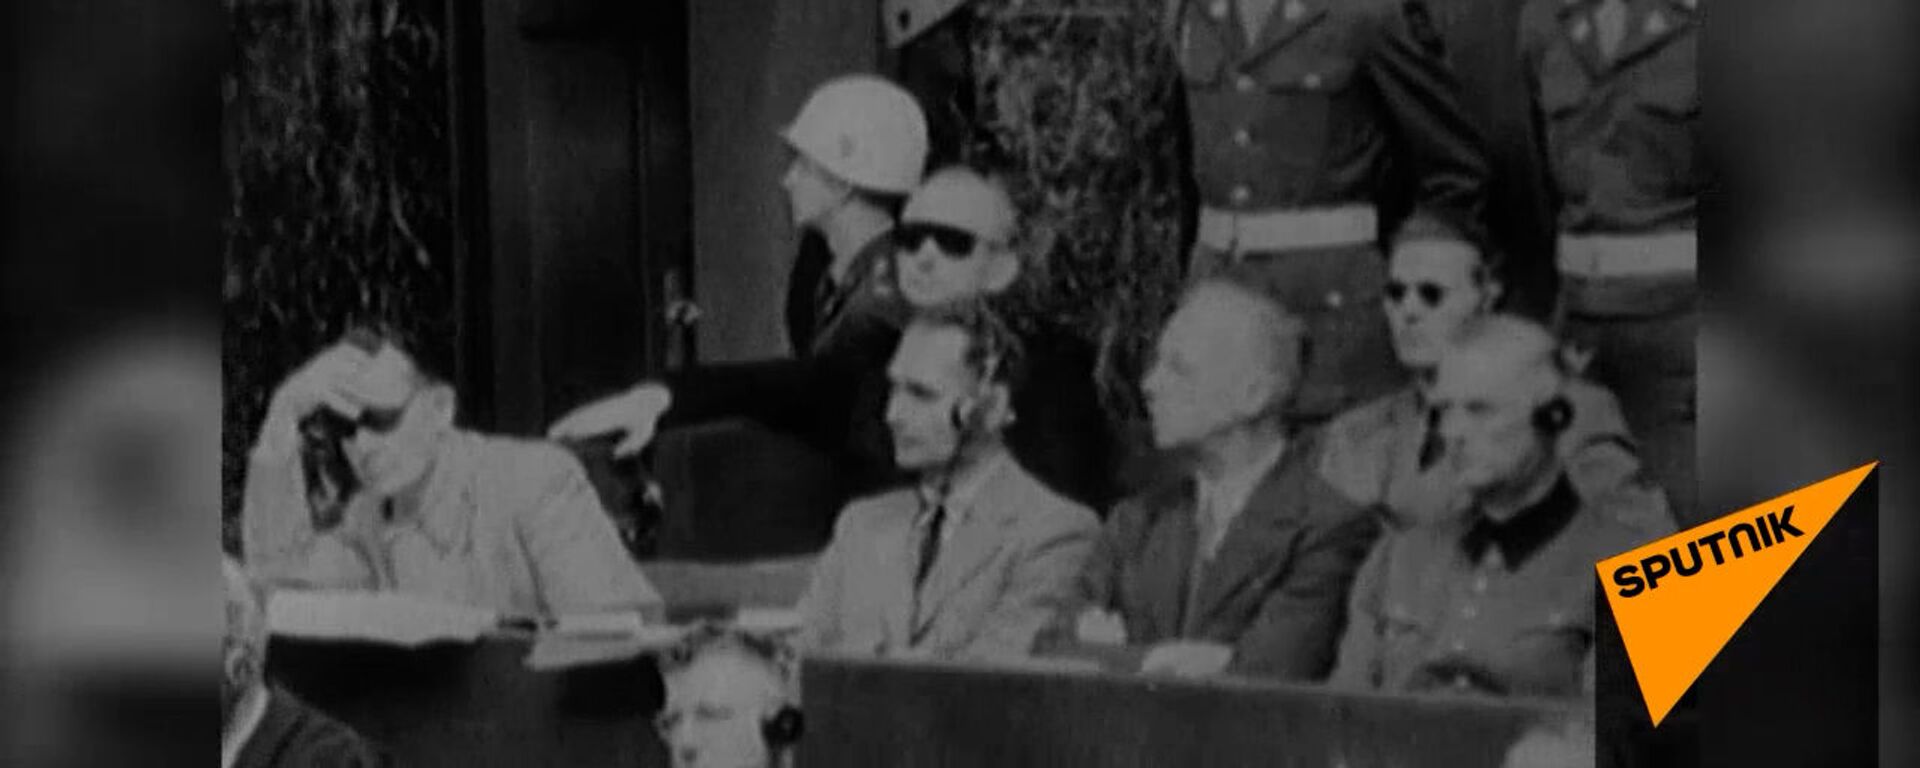 Суд истории на Нюрнбергском процессе 1945-1946 годов. Архивные кадры   - Sputnik Узбекистан, 1920, 19.11.2020